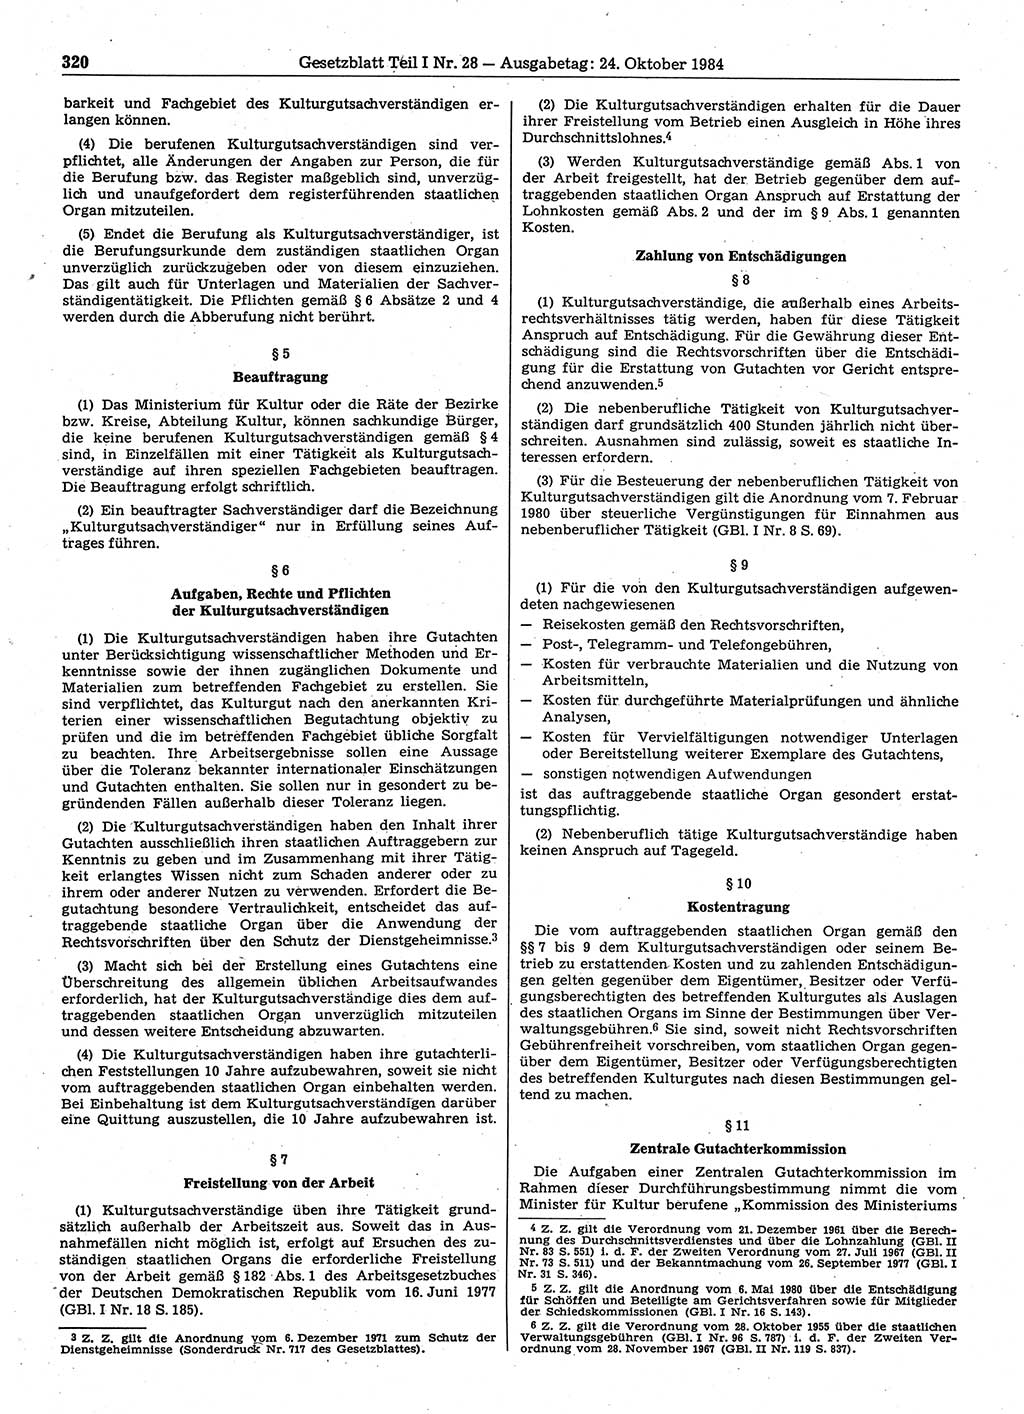 Gesetzblatt (GBl.) der Deutschen Demokratischen Republik (DDR) Teil Ⅰ 1984, Seite 319 (GBl. DDR Ⅰ 1984, S. 319)